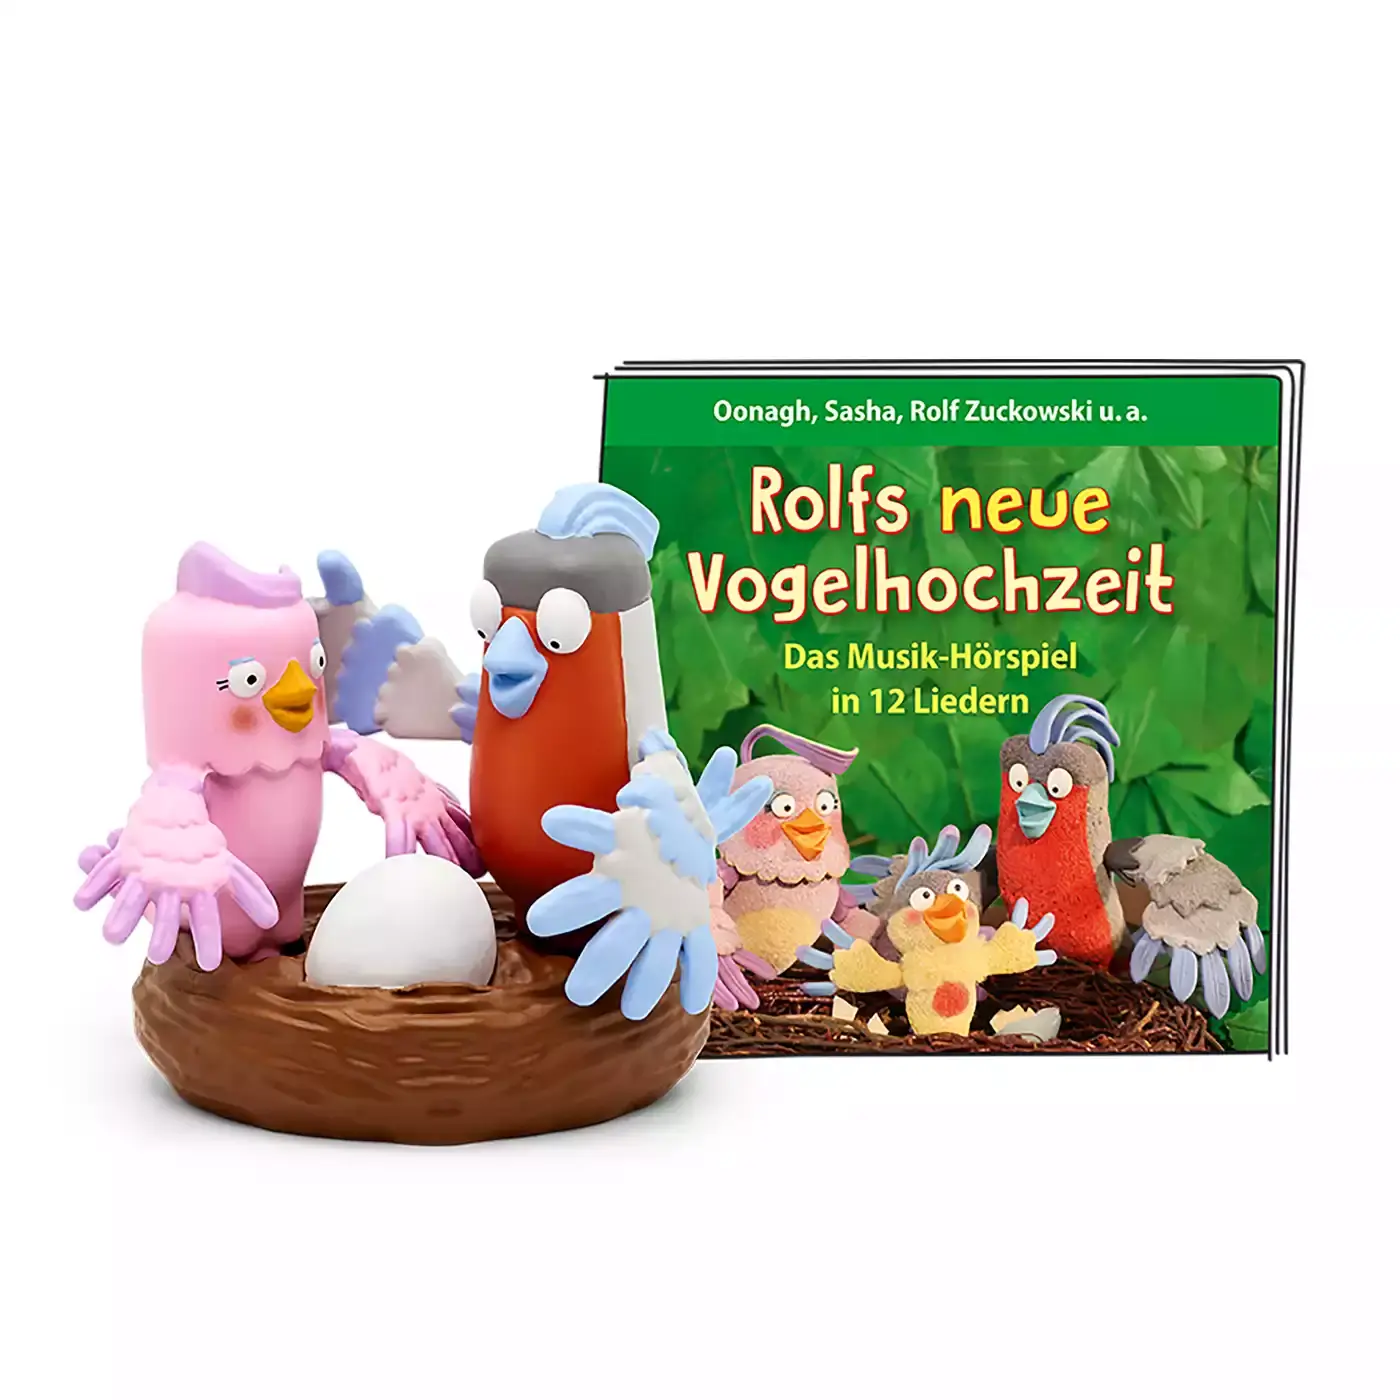 Rolf Zuckowski - Rolfs neue Vogelhochzeit tonies 2000578944605 1